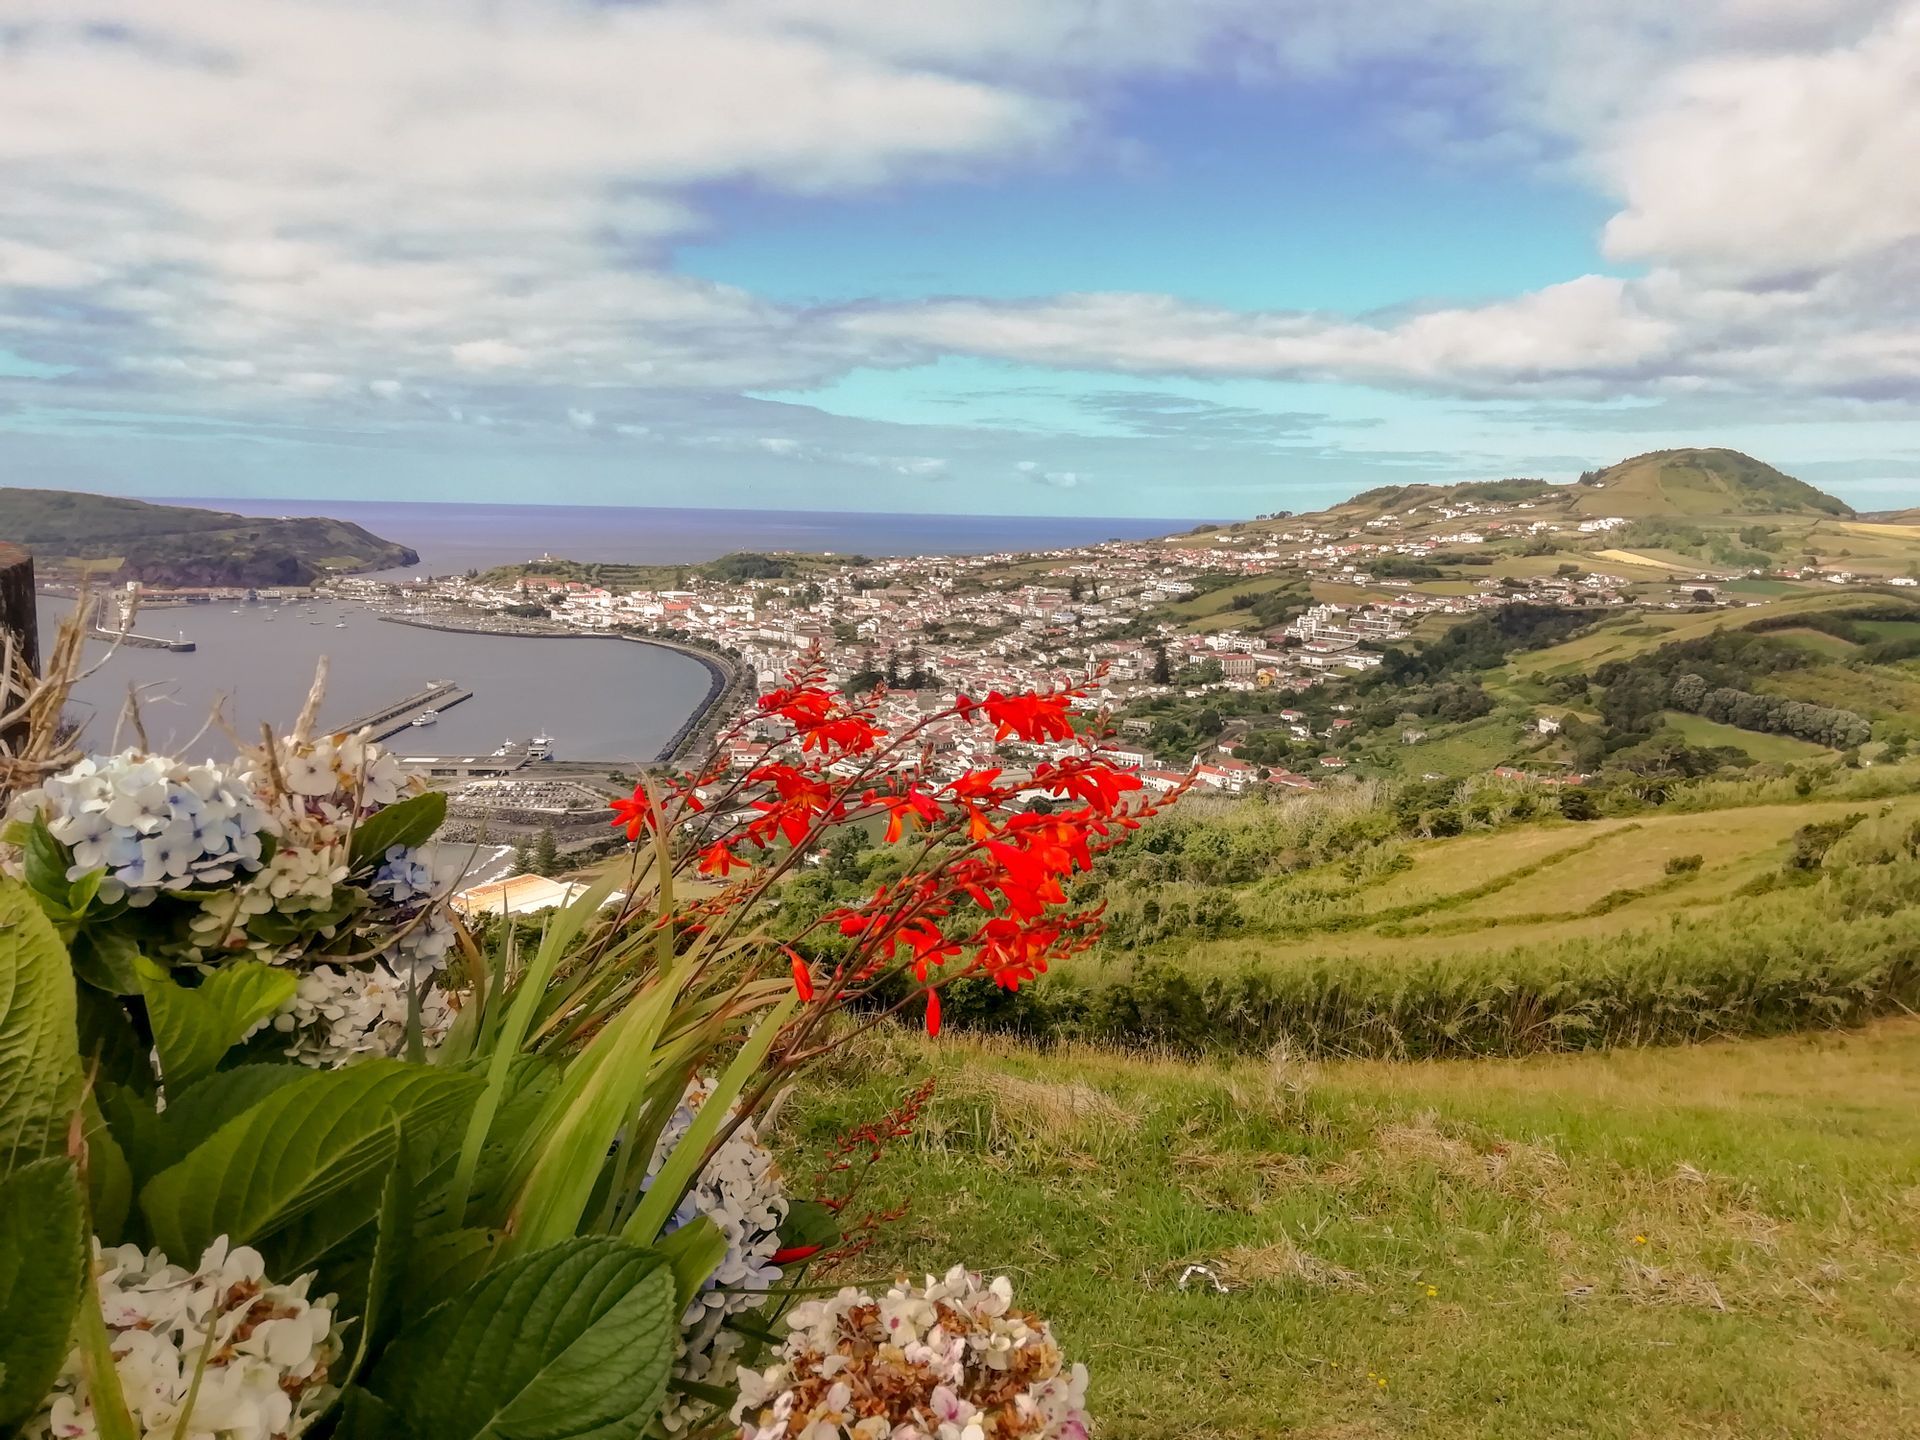 Visita ao Miradouro Nossa Senhora da Conceição nas nossas Excursões, Tours e Visitas Guiadas de meio dia na ilha do Faial Açores.